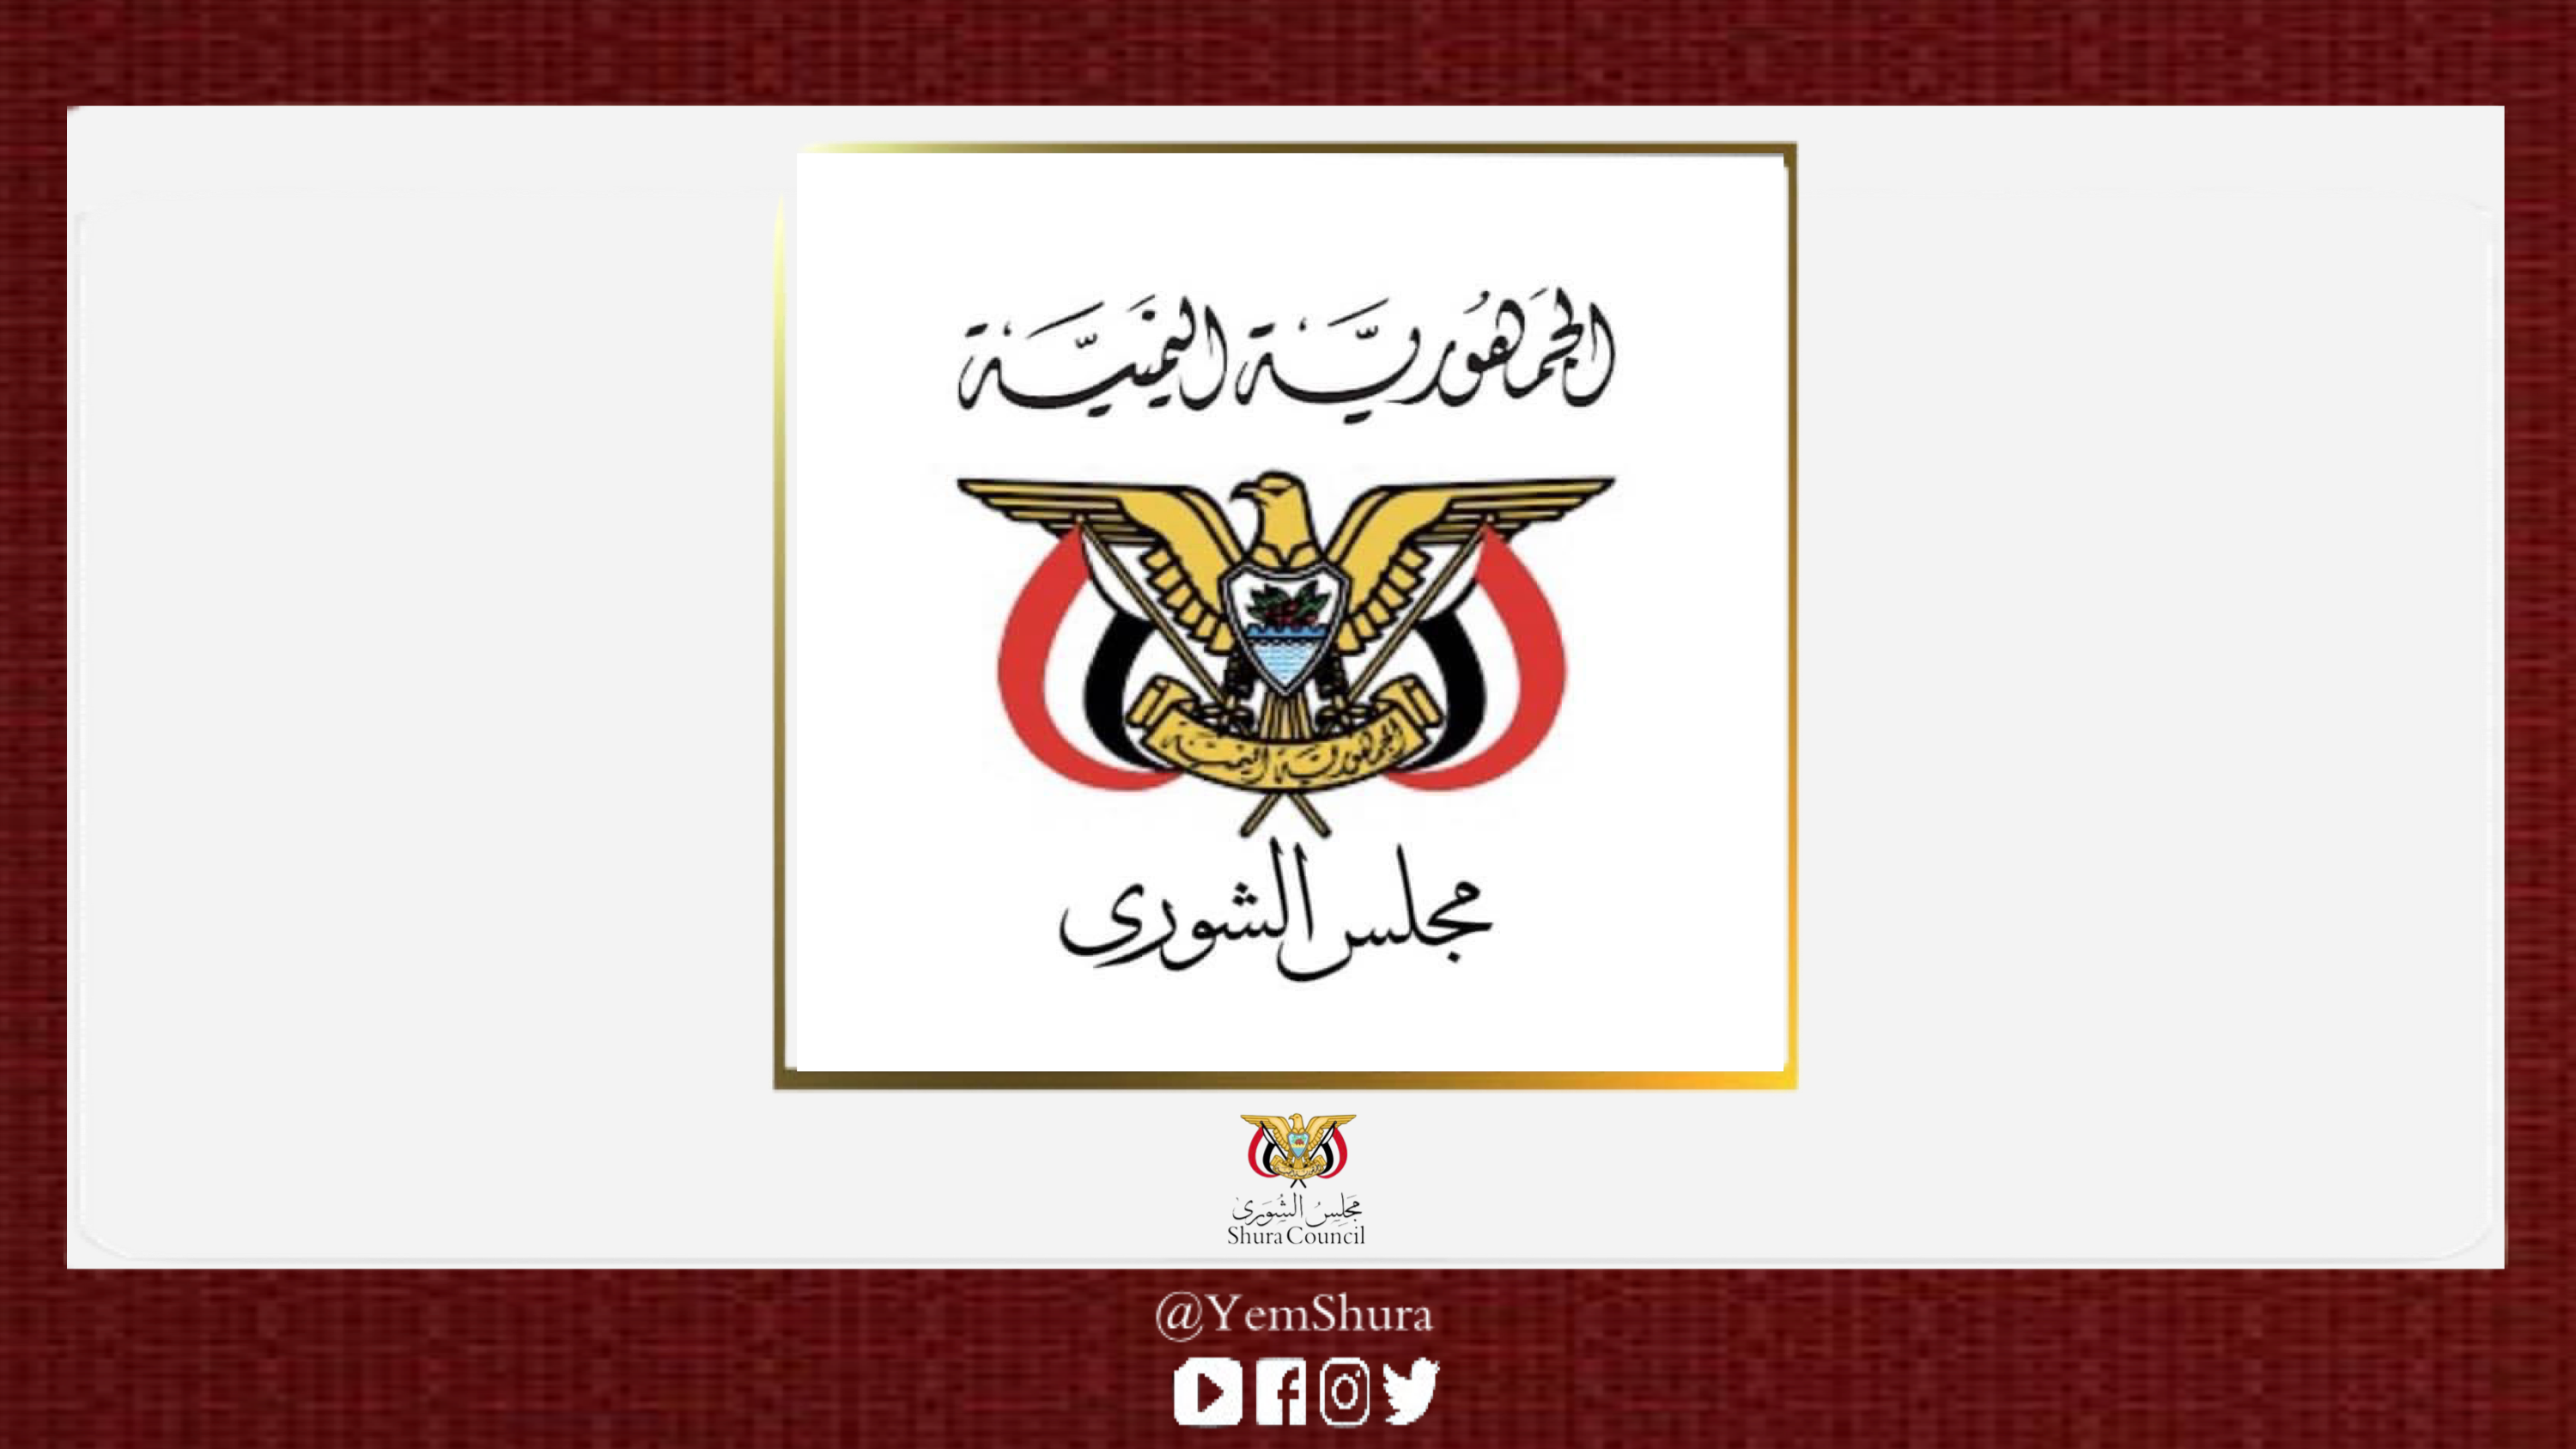 مجلس الشورى يؤكد وقوف الشعب اليمني وقيادته الشرعية مع مطالب الشعب الفلسطيني